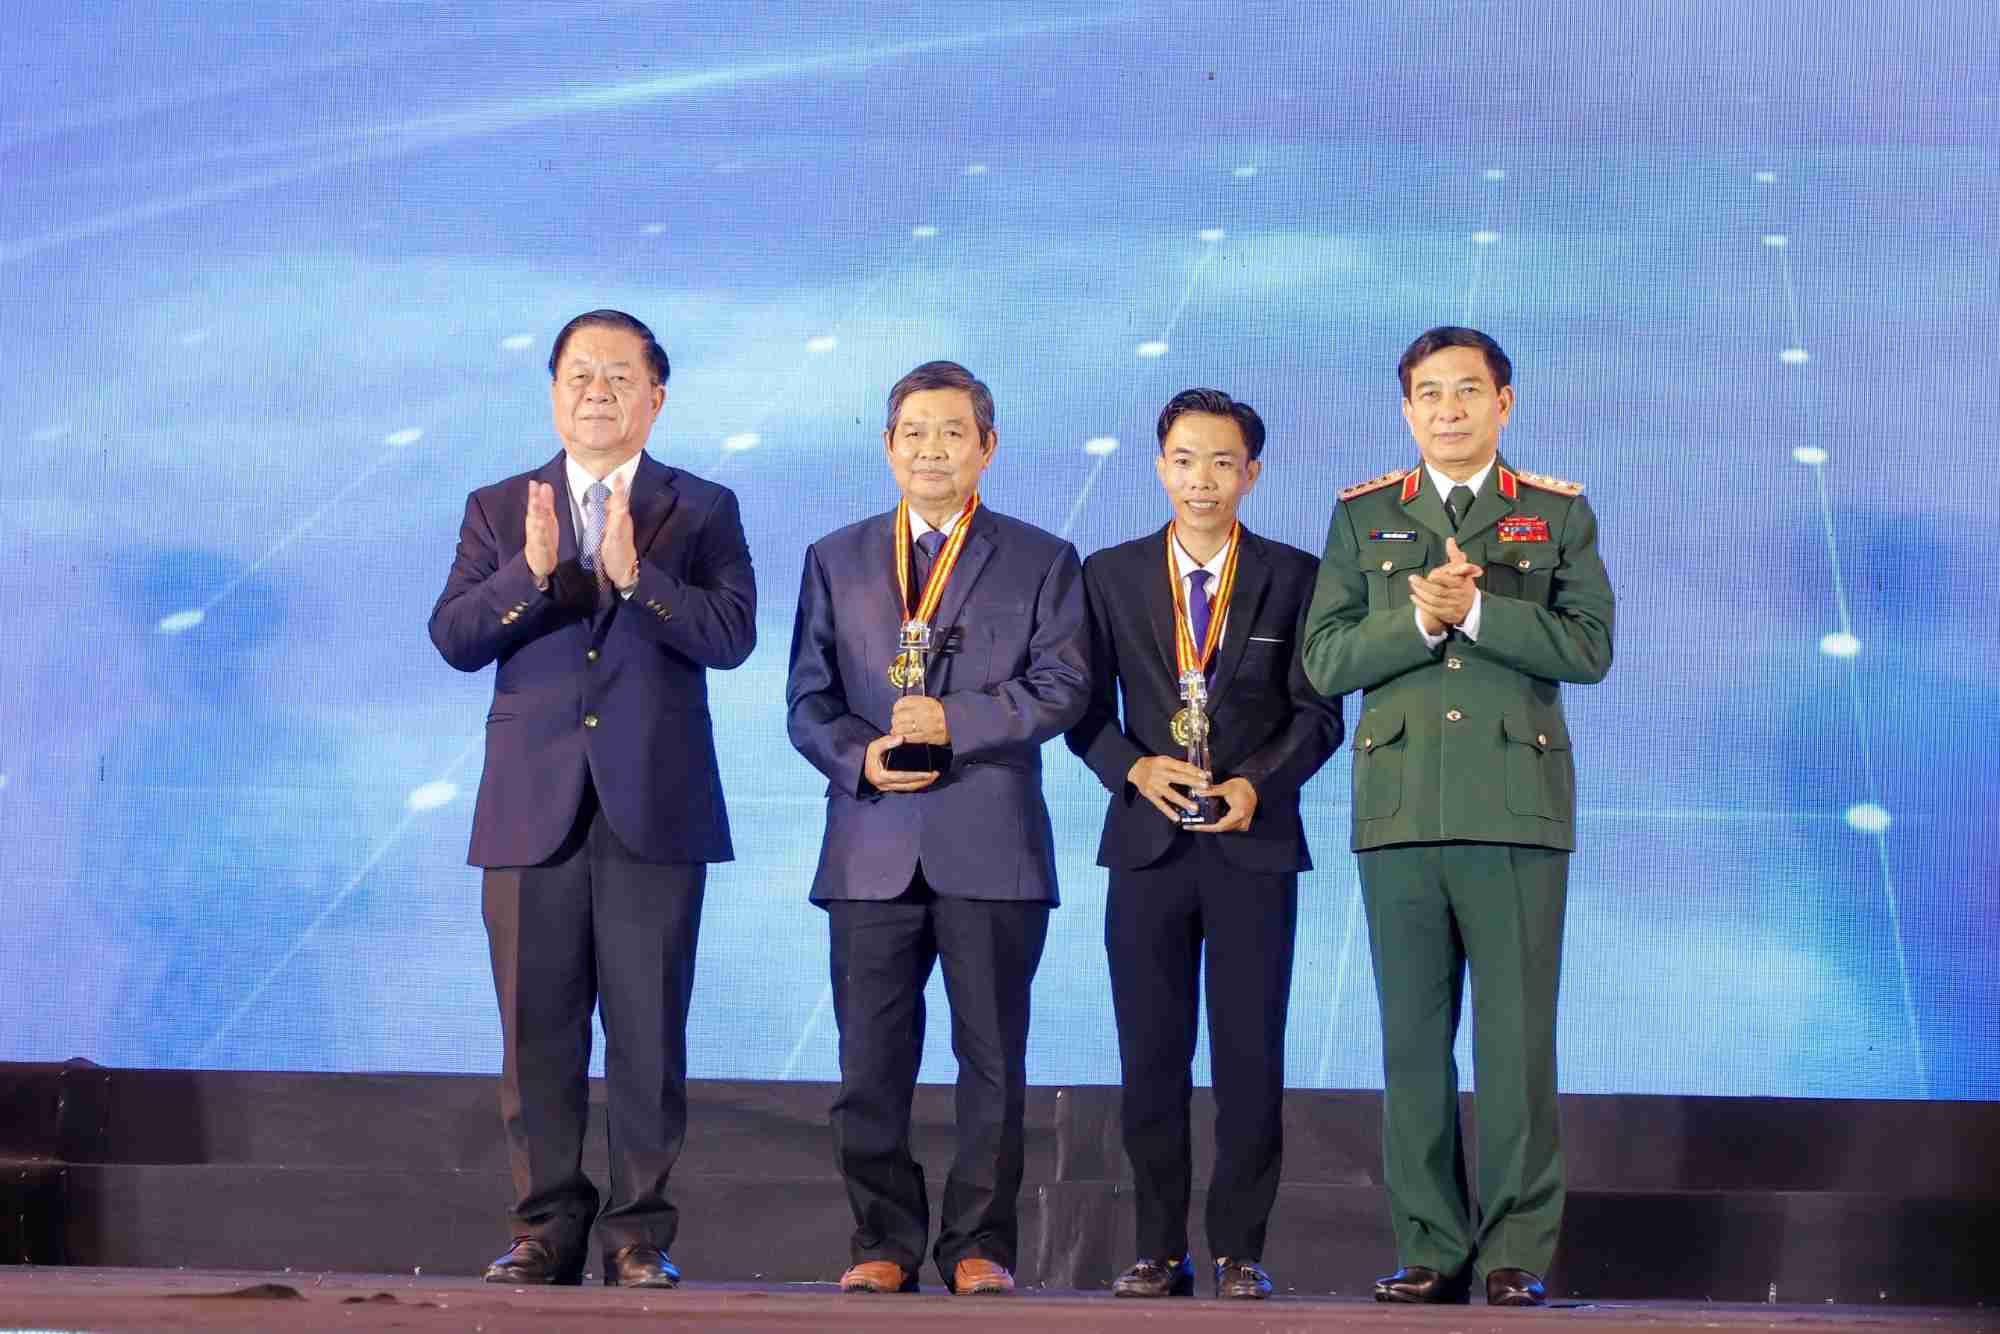 Đại tướng Phan Văn Giang, Ủy viên Bộ Chính trị, Phó Bí thư Quân ủy Trung ương, Bộ trưởng Bộ Quốc phòng và đồng chí Nguyễn Trọng Nghĩa, Bí thư Trung ương Đảng, Trưởng Ban Tuyên giáo Trung ương trao tặng giải Nhất.